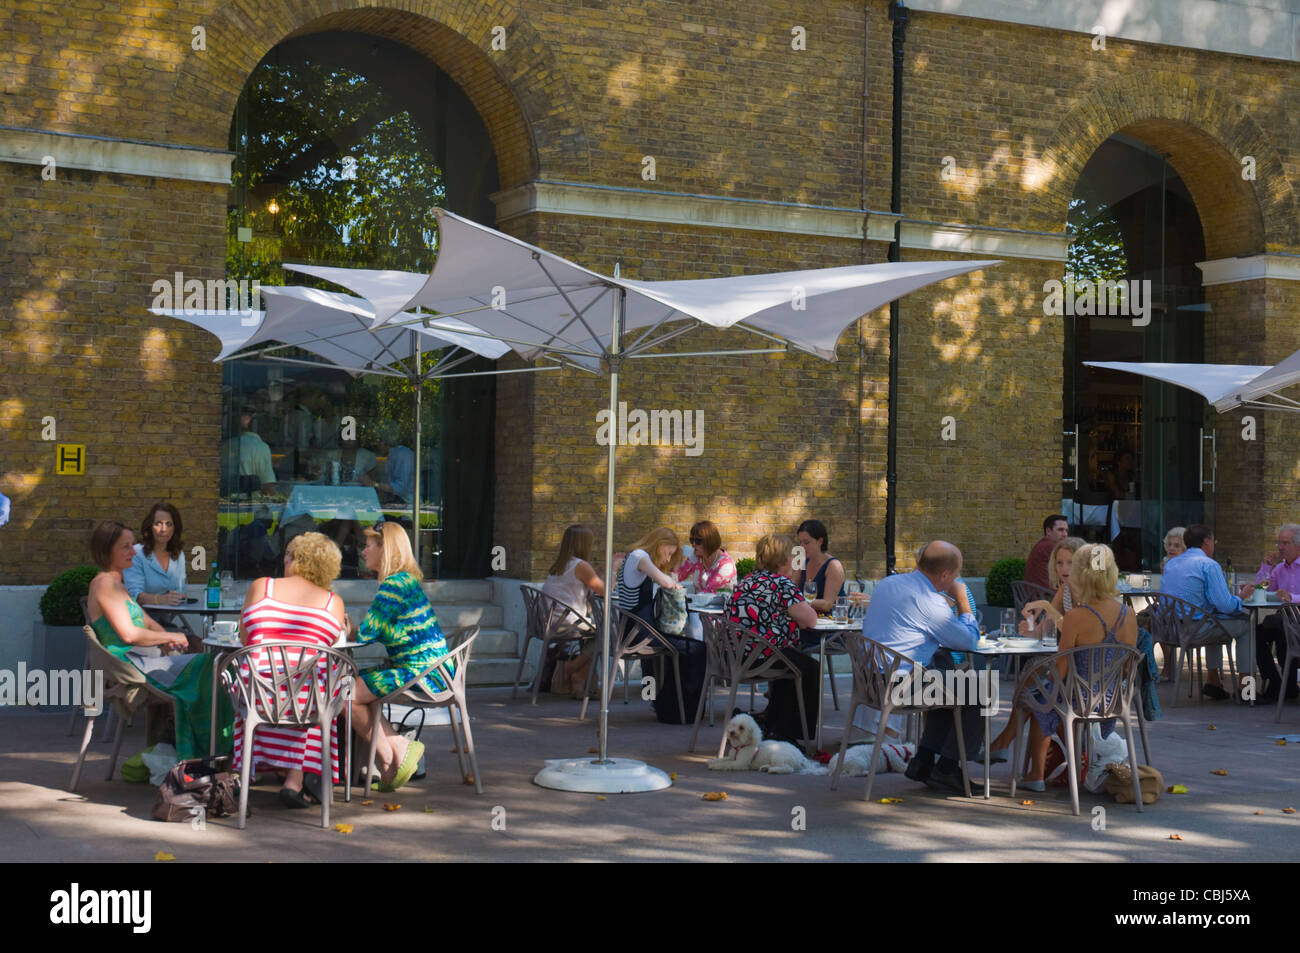 Galería de Saachi ensuciar el restaurante Gallery en Chelsea London Borough Inglaterra Europa Foto de stock